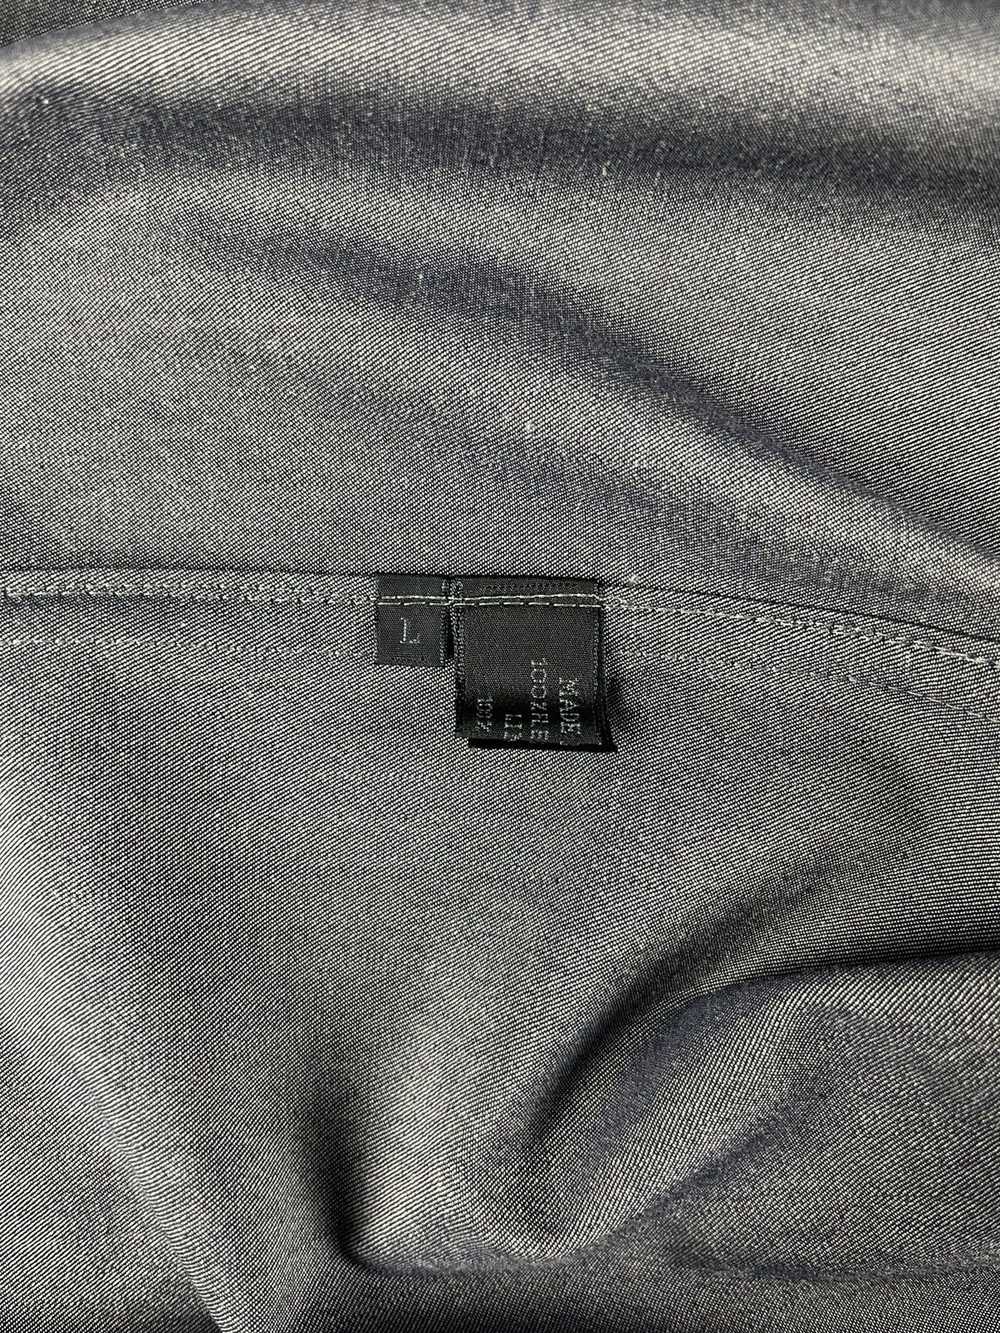 Prada Prada Double Zip Linen Jacket FW 1998 - image 9